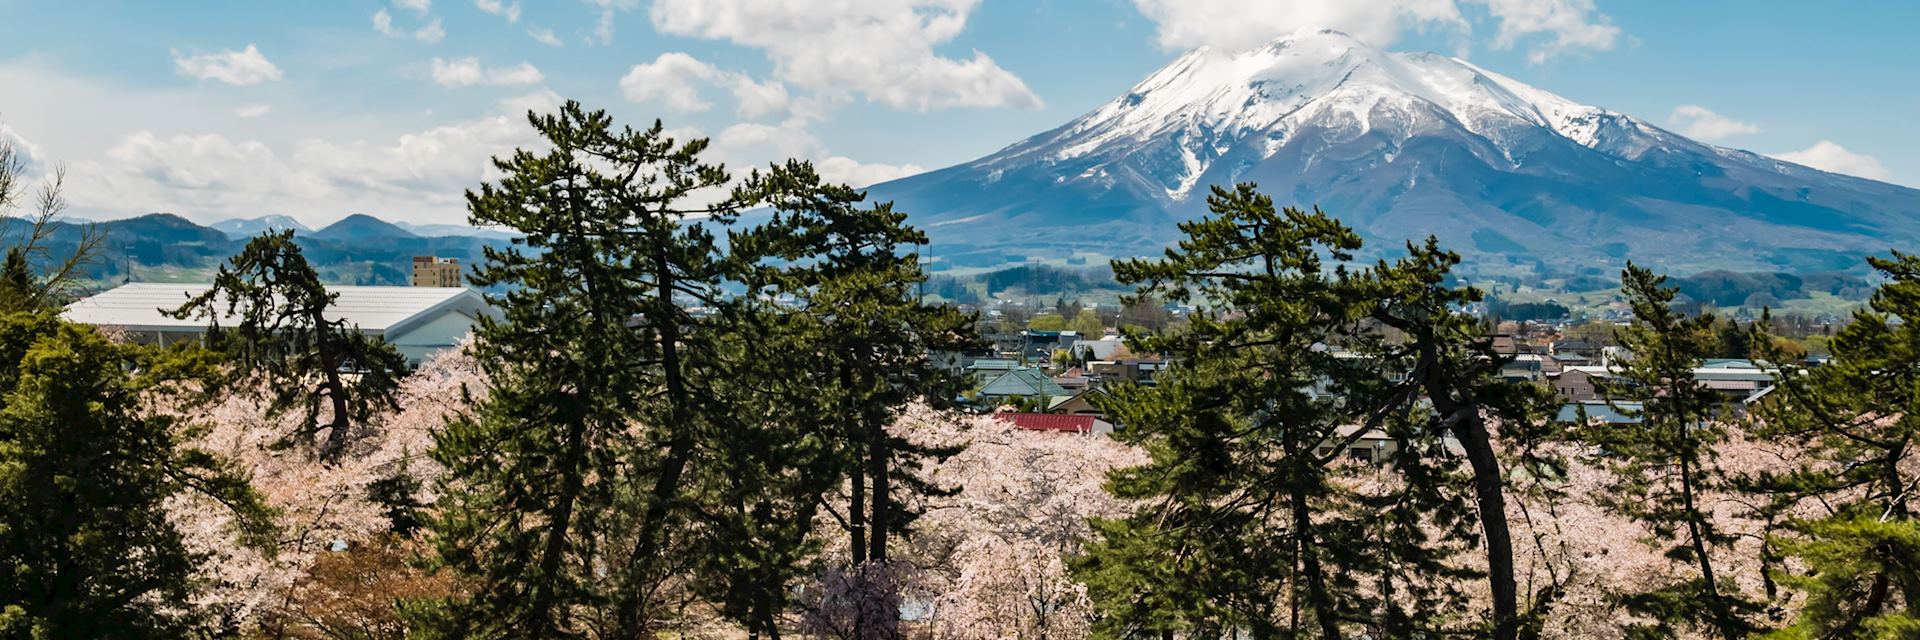 Mount Iwaki, Tohoku